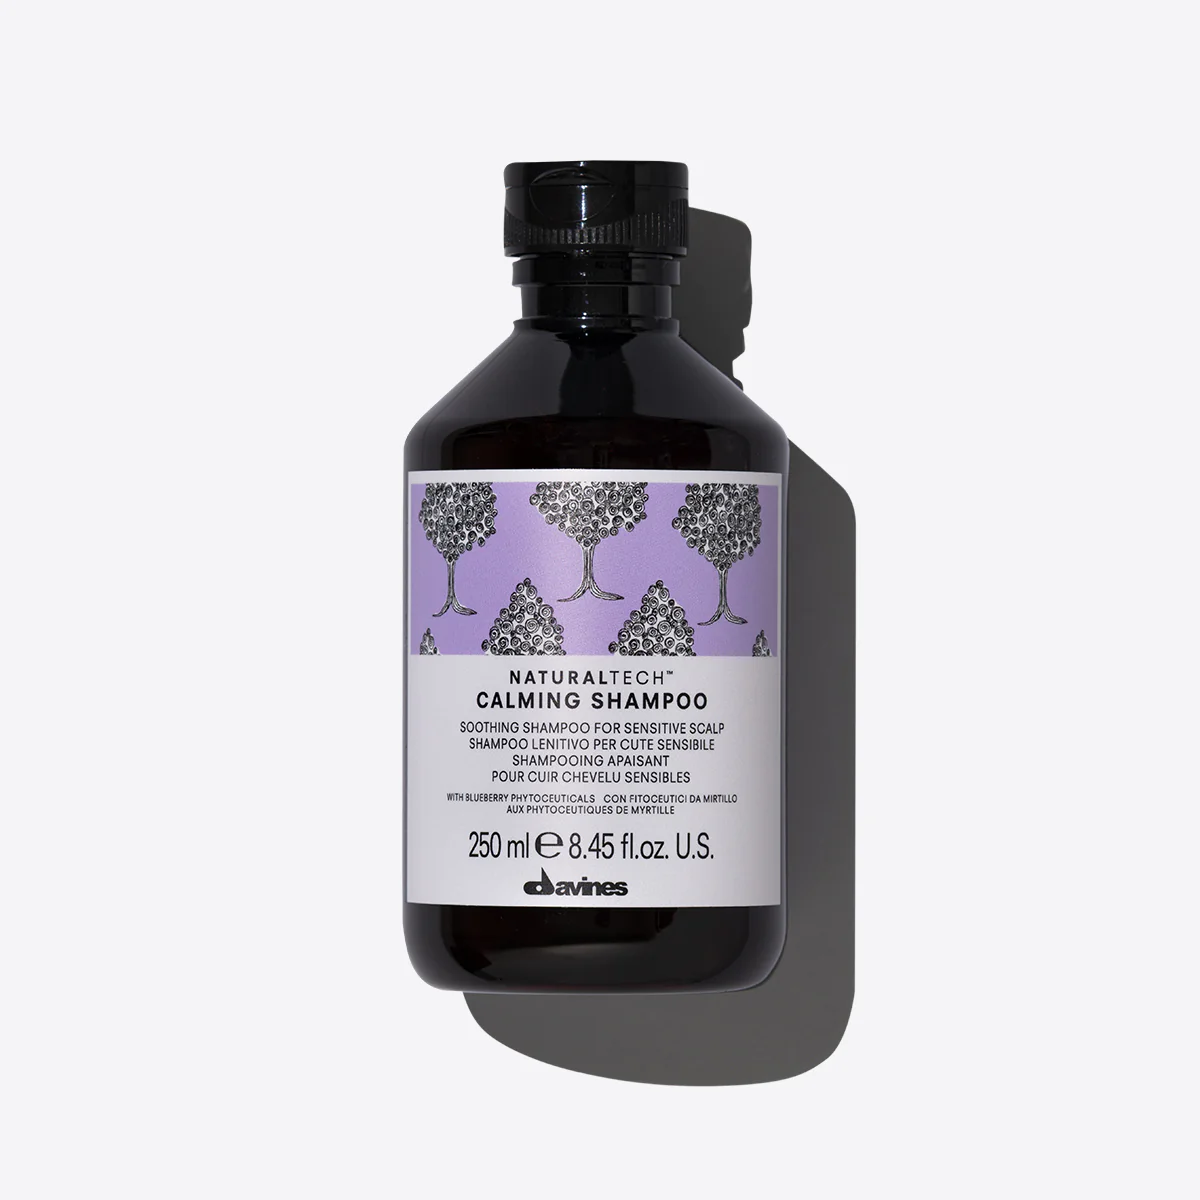 NaturalTech Calming Shampoo - Успокаивающий шампунь для чувствительной кожи головы , объем 250 мл - фото 1